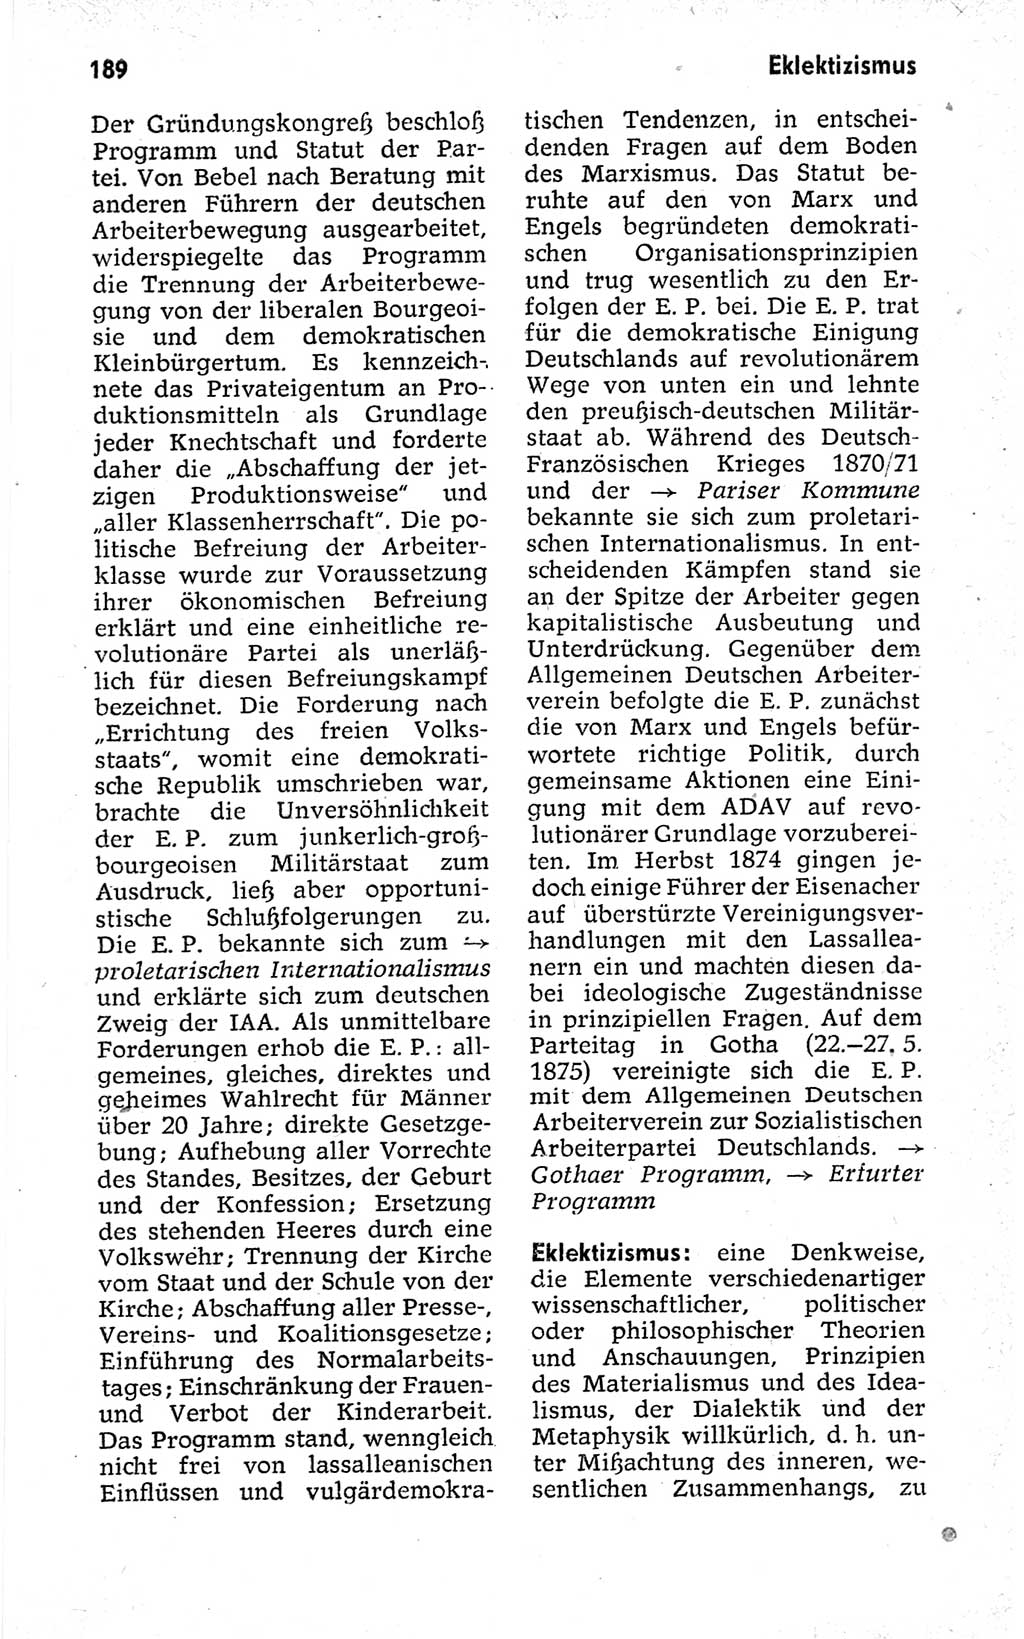 Kleines politisches Wörterbuch [Deutsche Demokratische Republik (DDR)] 1973, Seite 189 (Kl. pol. Wb. DDR 1973, S. 189)